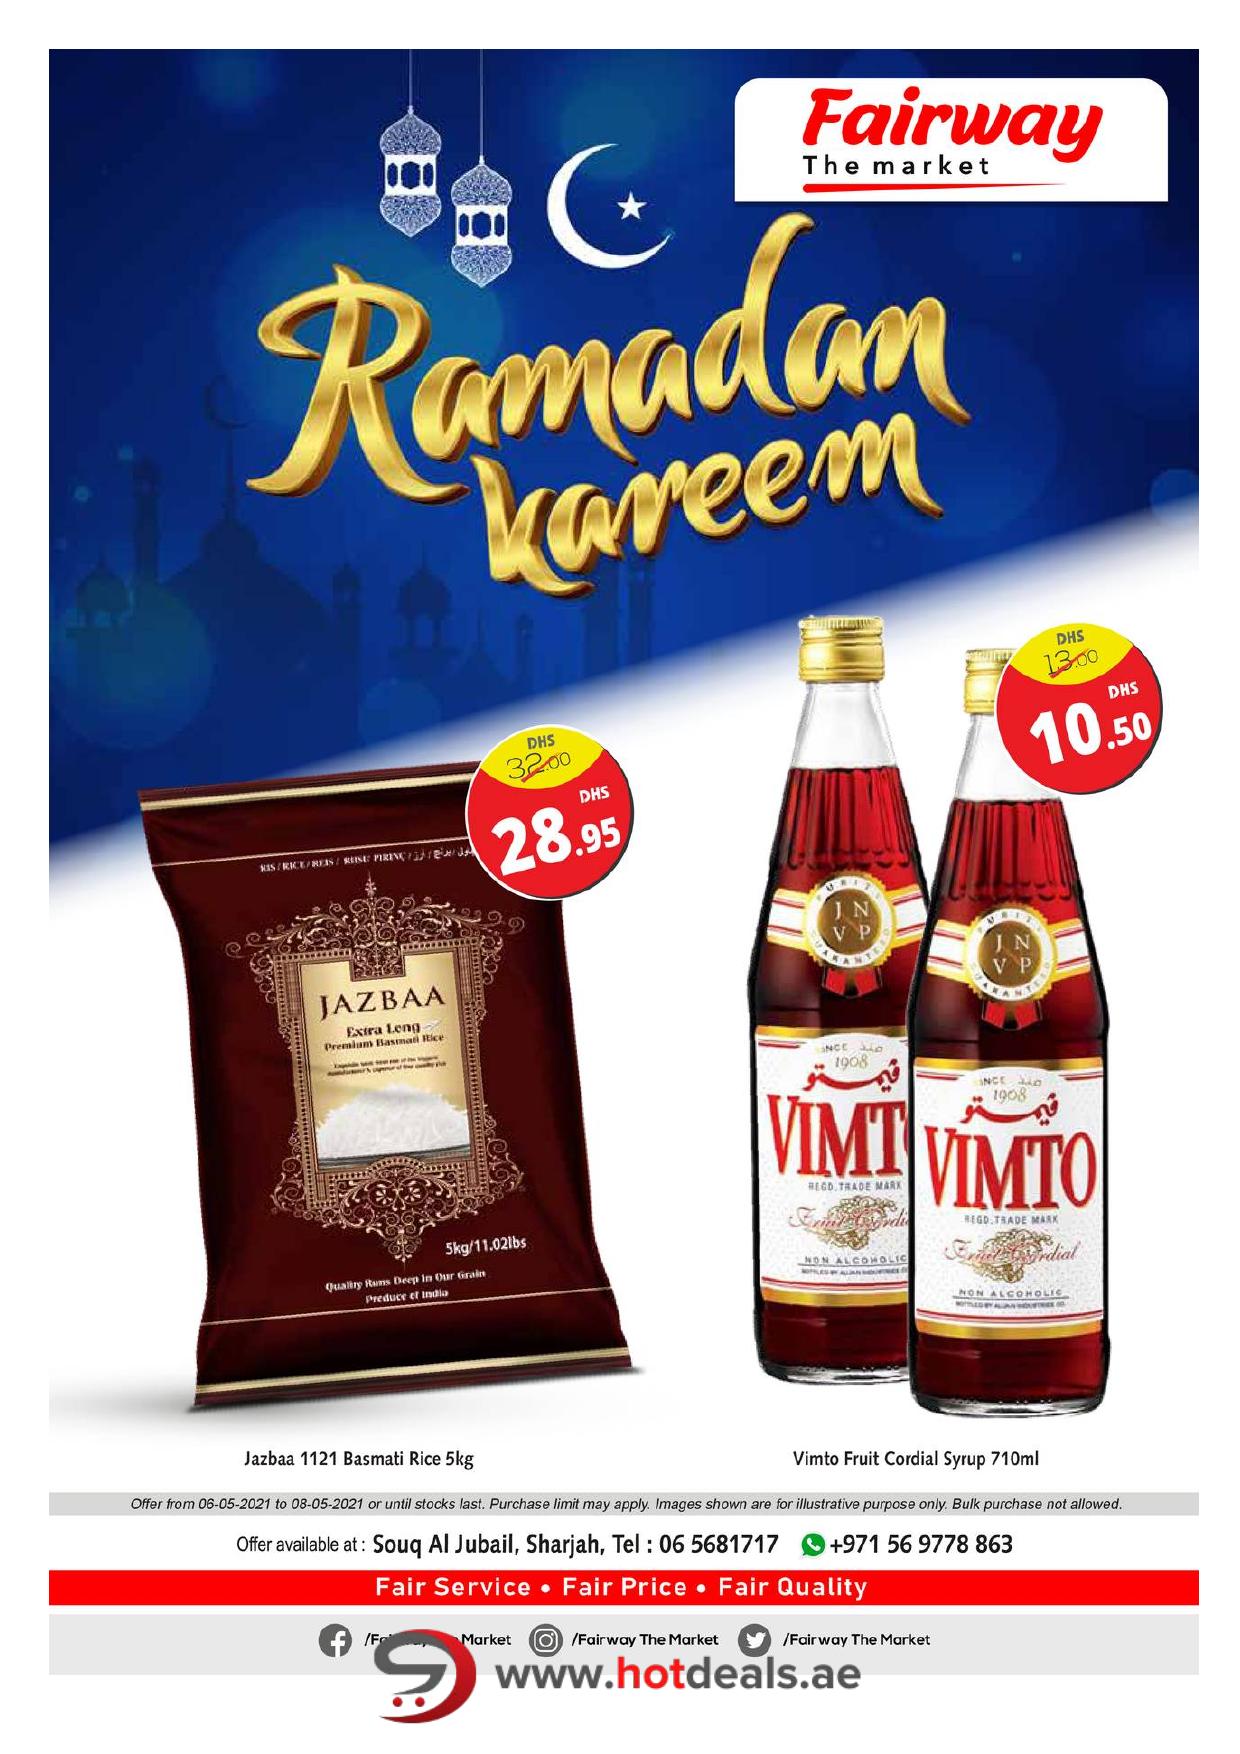 <p><span style="font-size: 18px;"><font color="#424242">Special Ramadan Offers - Fairway The Market, Souq Al Jubail</font></span><br></p>